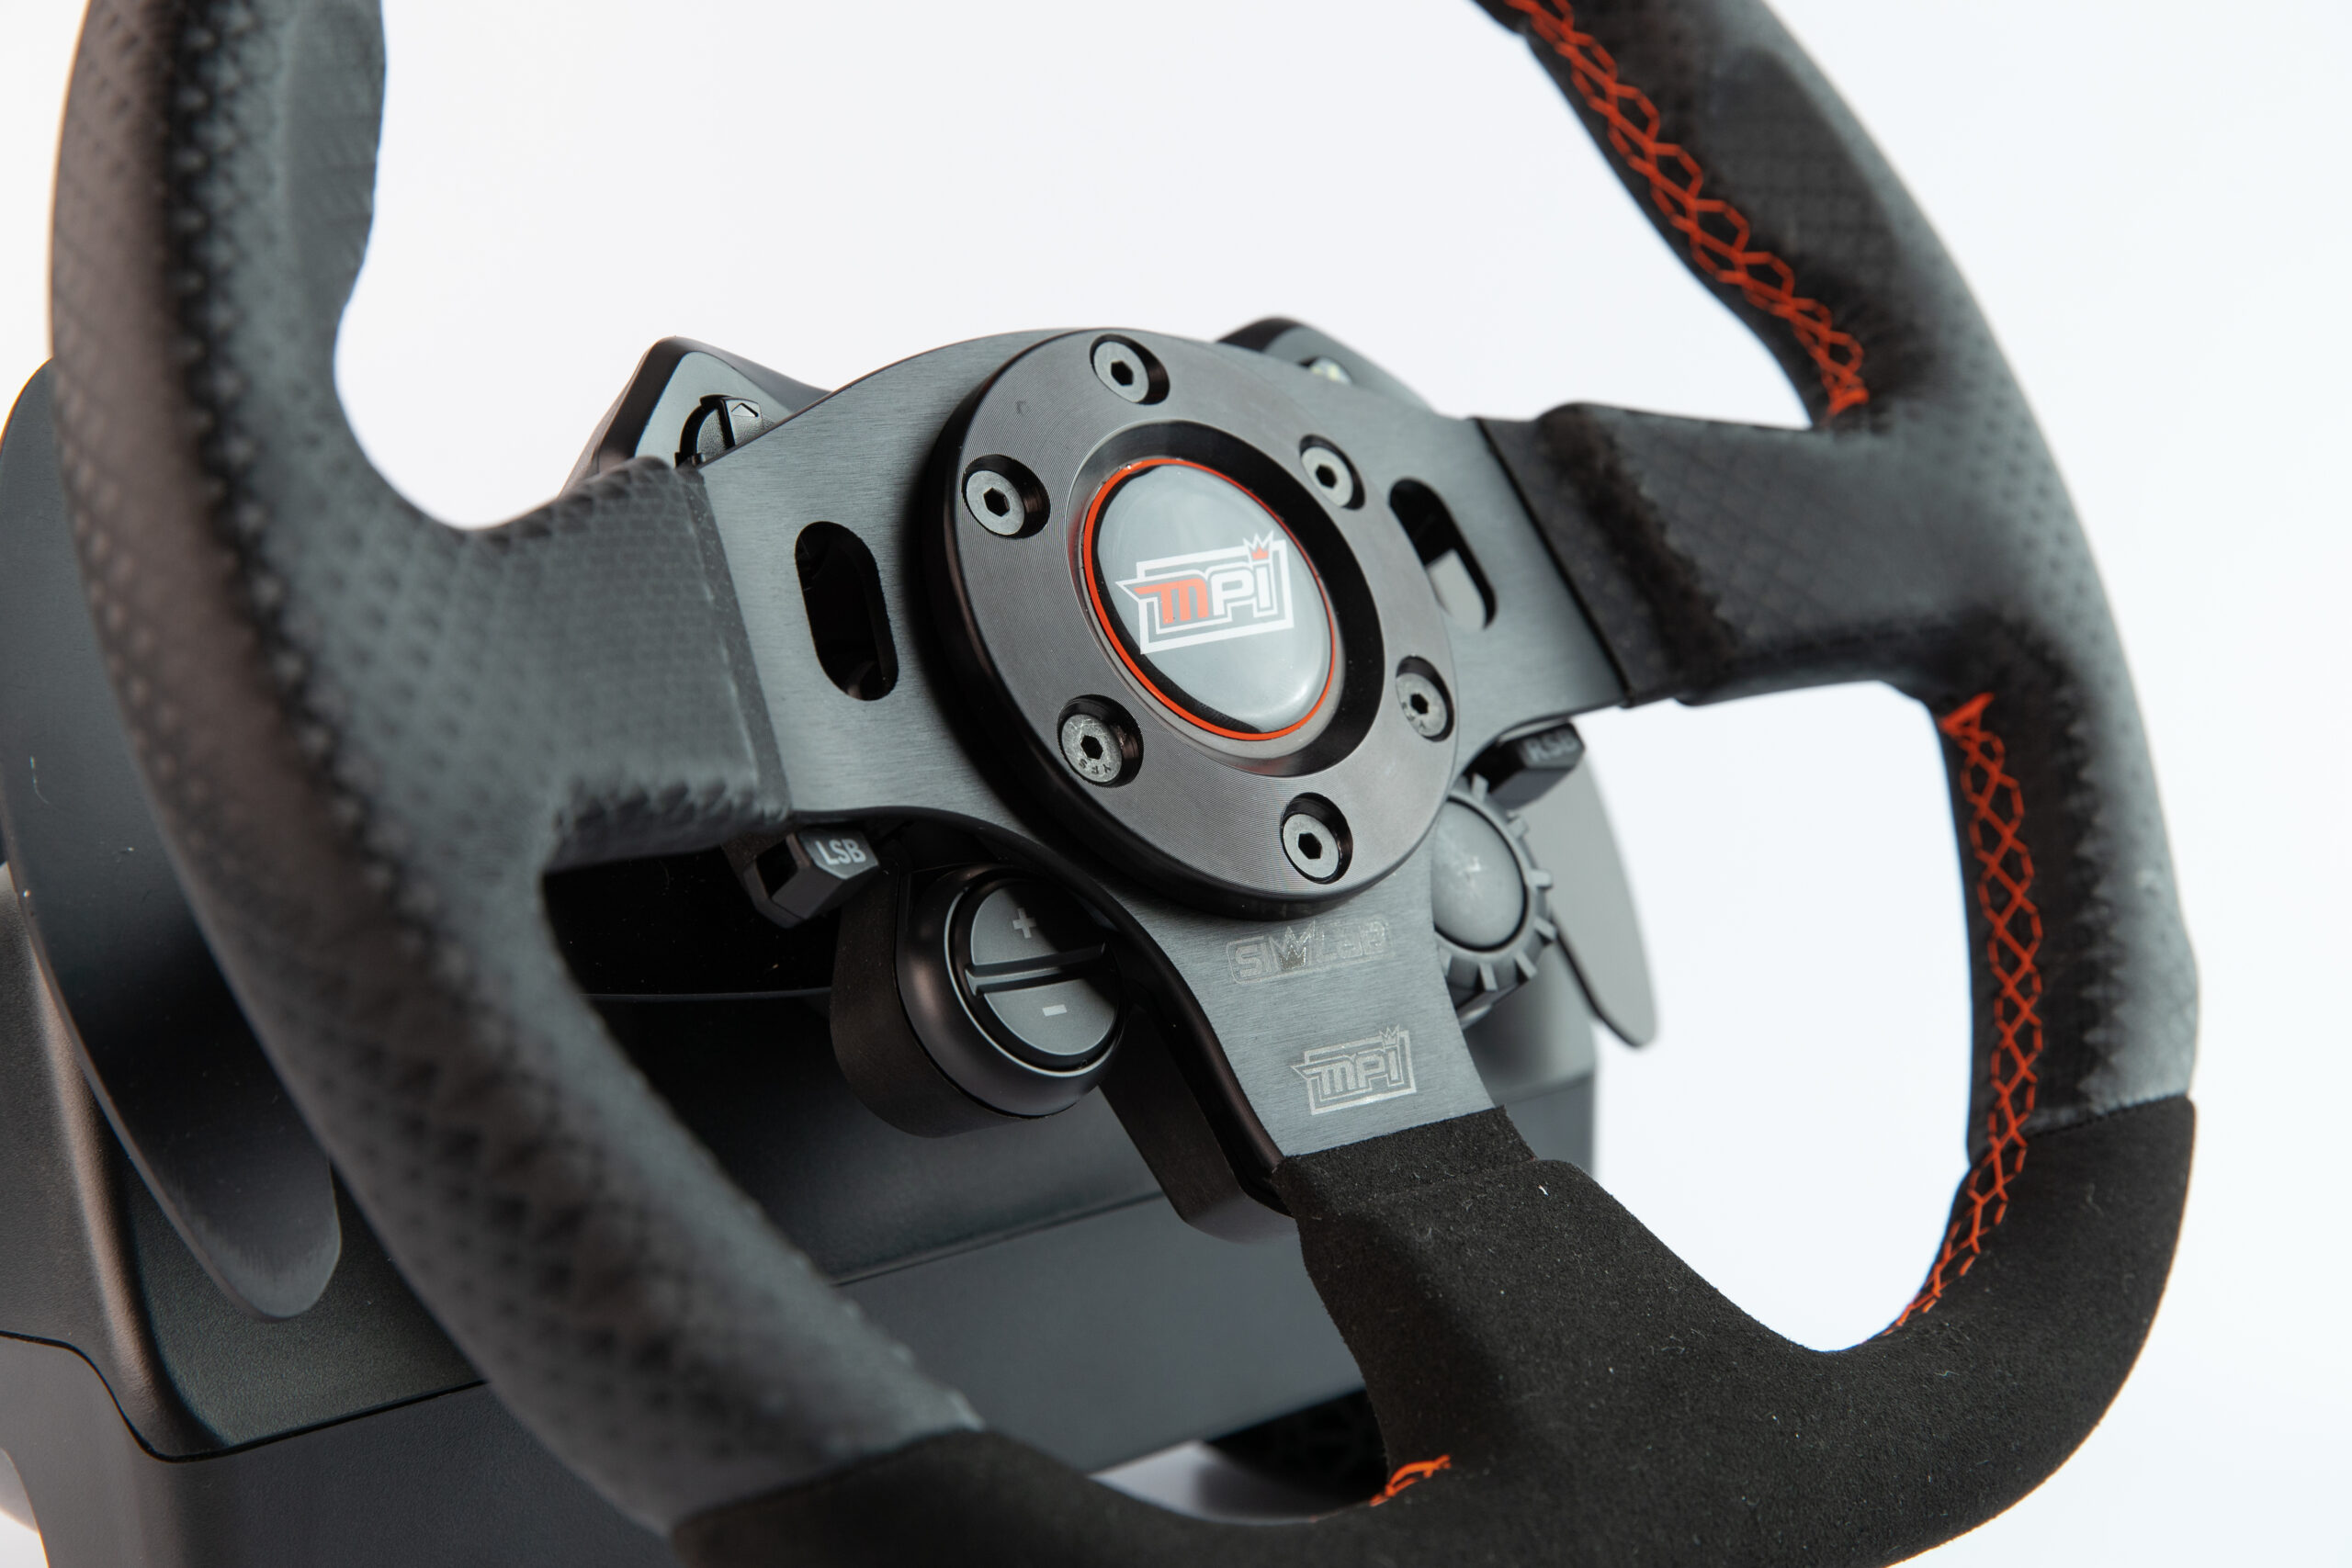 Logitech Steering Wheel Adapter – Max Innovations